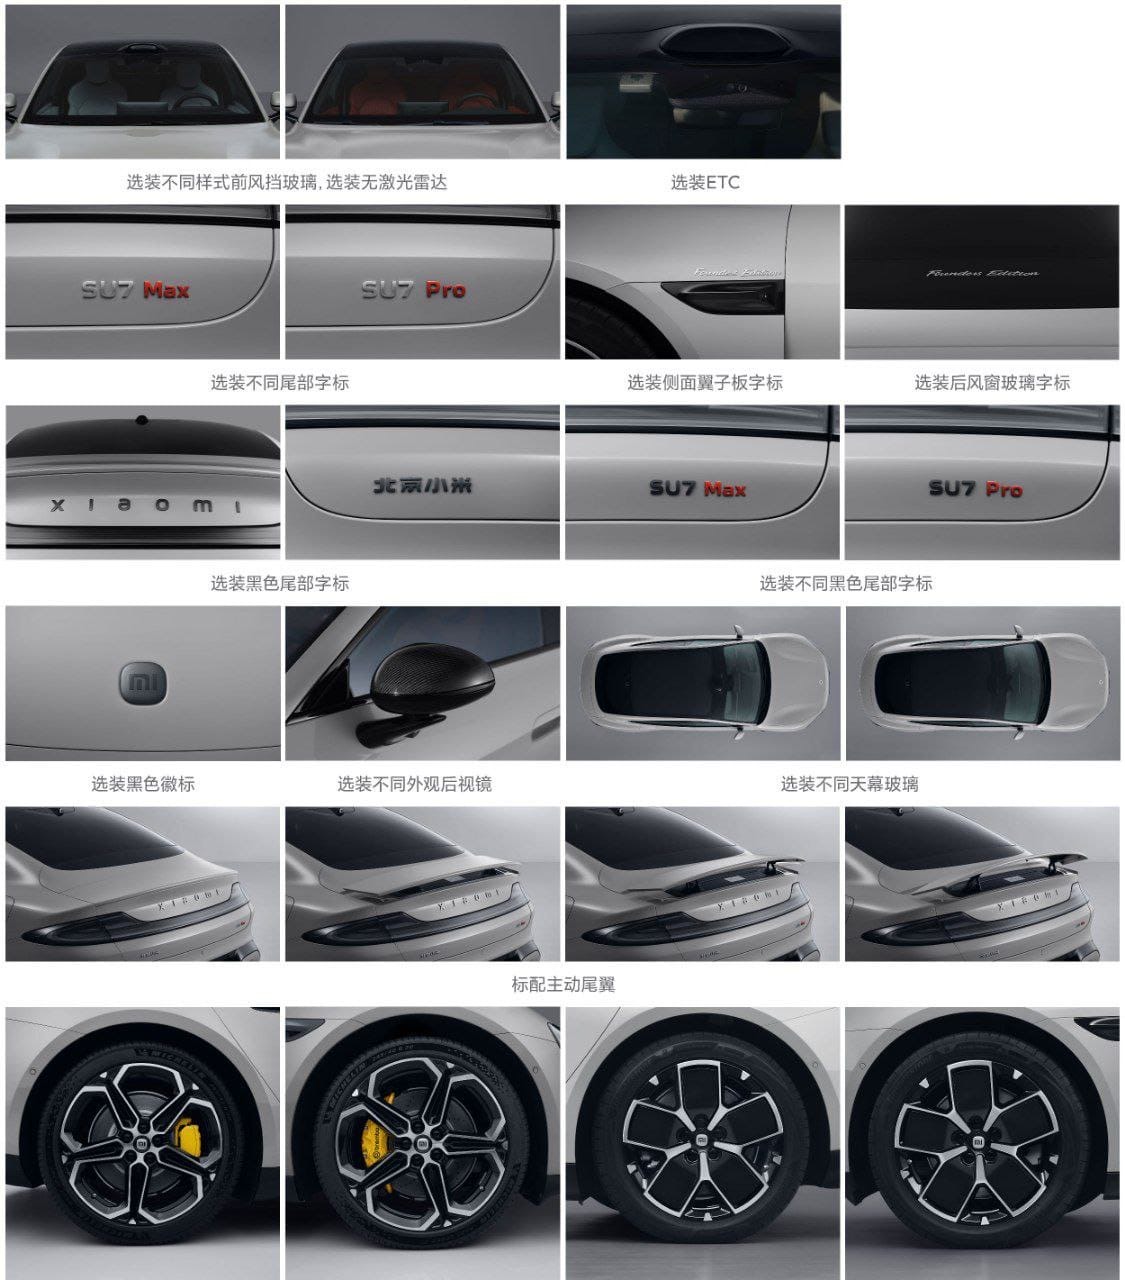 Officiel : xiaomi dévoile son incroyable voiture